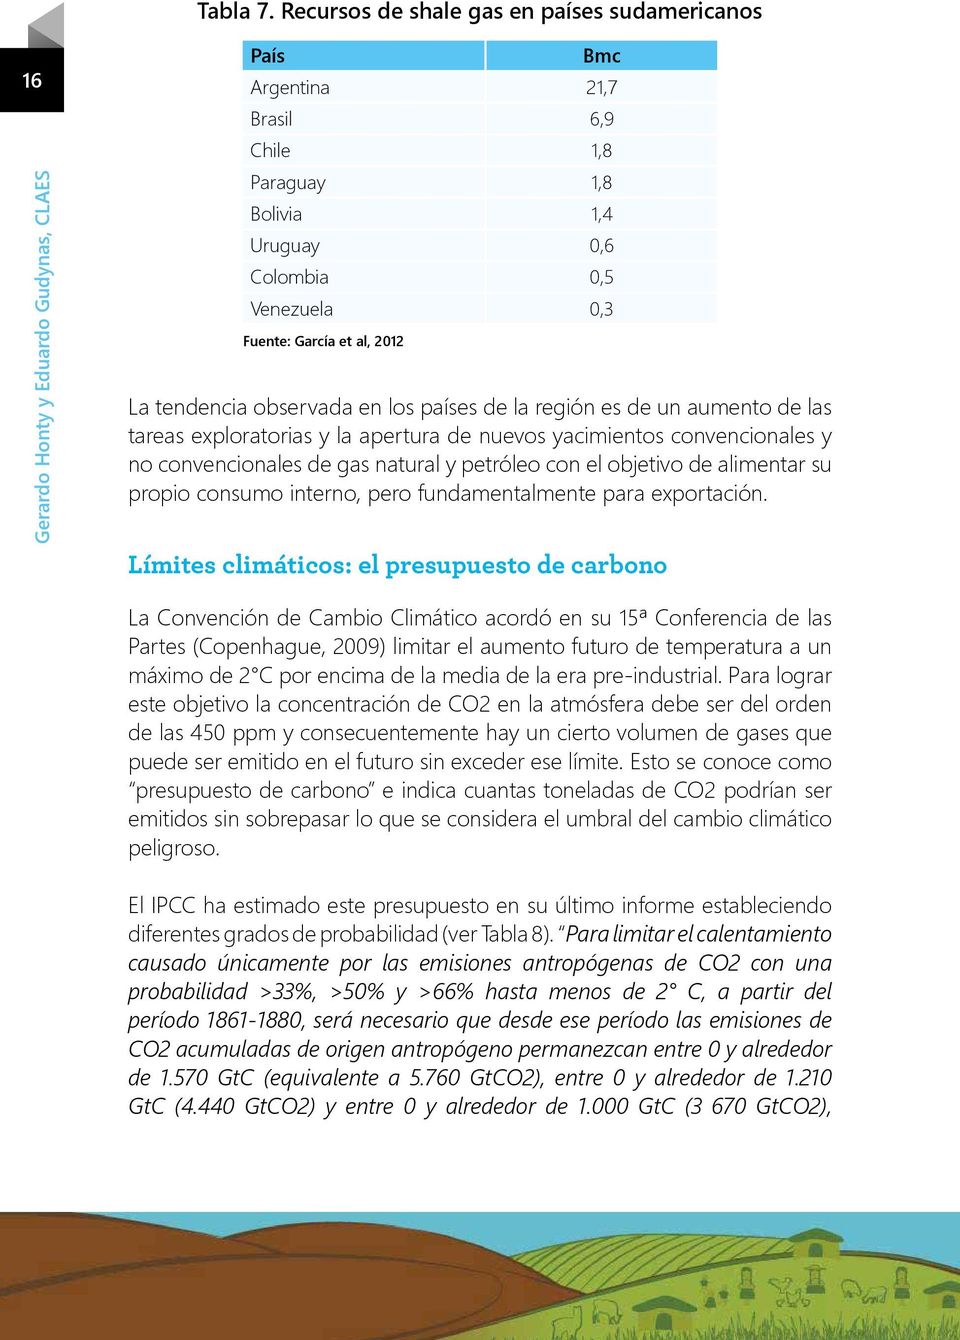 Fuente: García et al, 2012 La tendencia observada en los países de la región es de un aumento de las tareas exploratorias y la apertura de nuevos yacimientos convencionales y no convencionales de gas